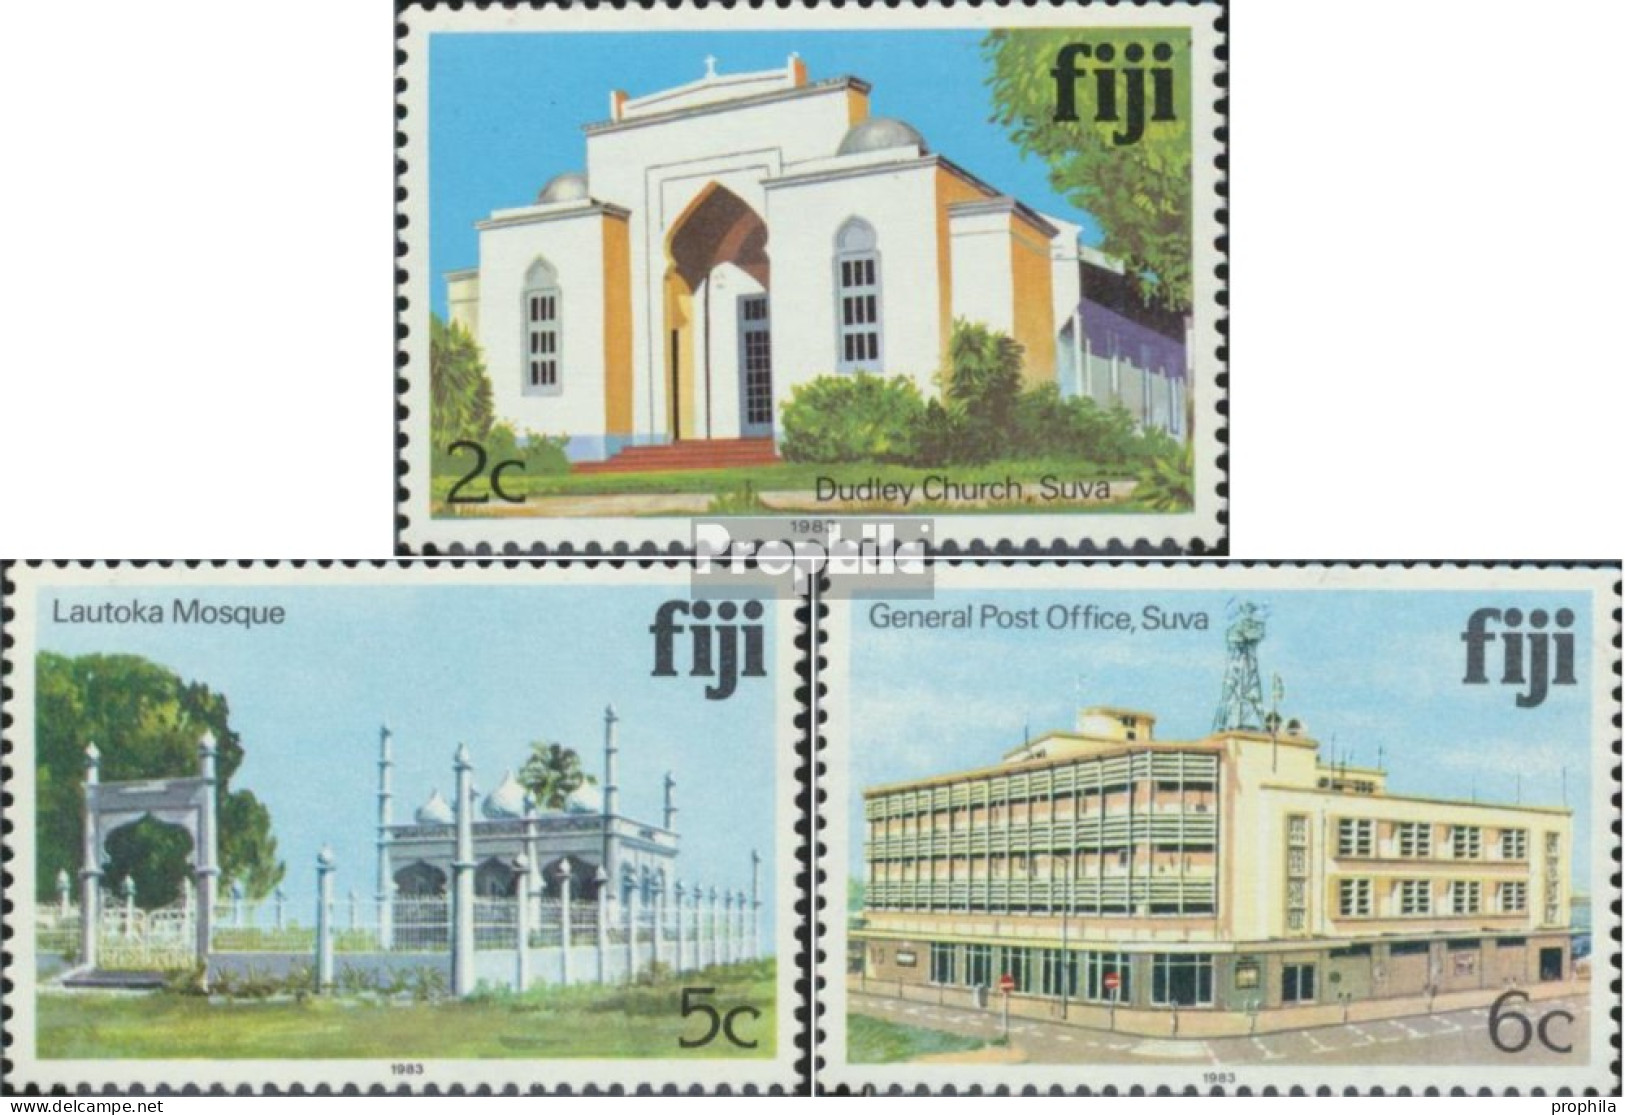 Fidschi-Inseln 400II,402II,403II (kompl.Ausg.) Mit Jahreszahl 1983 Postfrisch 1983 Sehenswürdigkeiten - Fiji (1970-...)